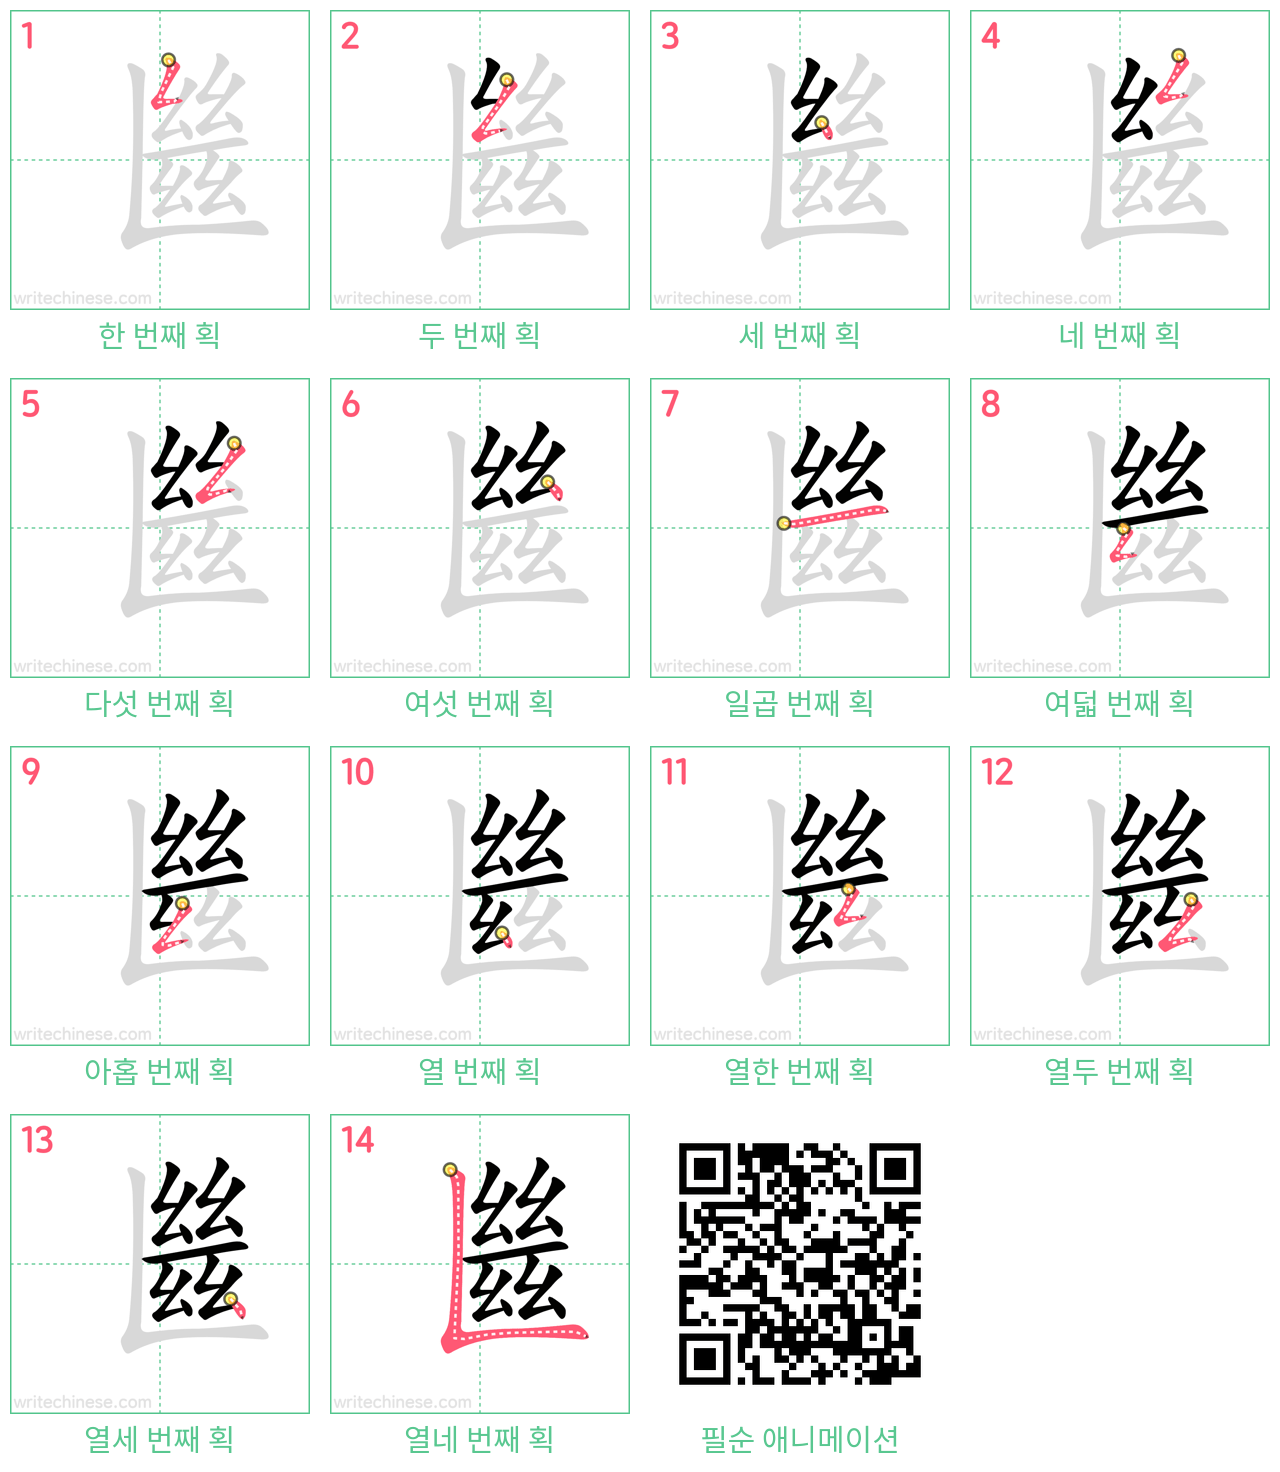 㡭 step-by-step stroke order diagrams